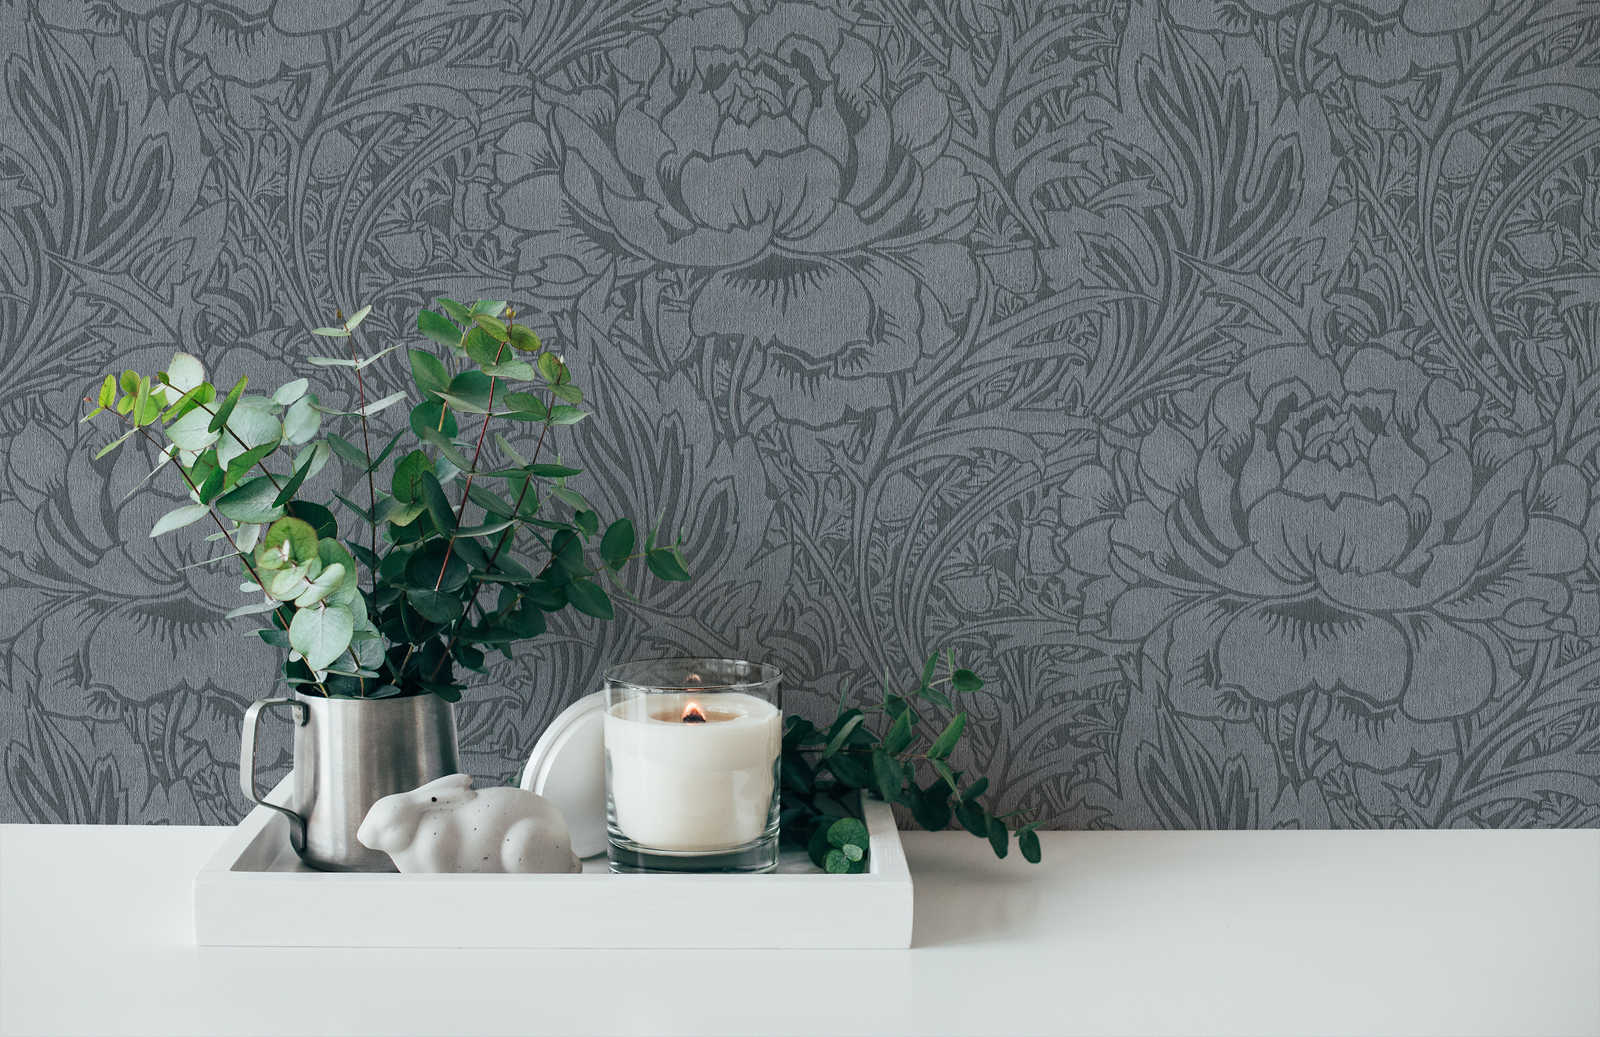             Bloemen behang grijs met bloemen art nouveau design
        